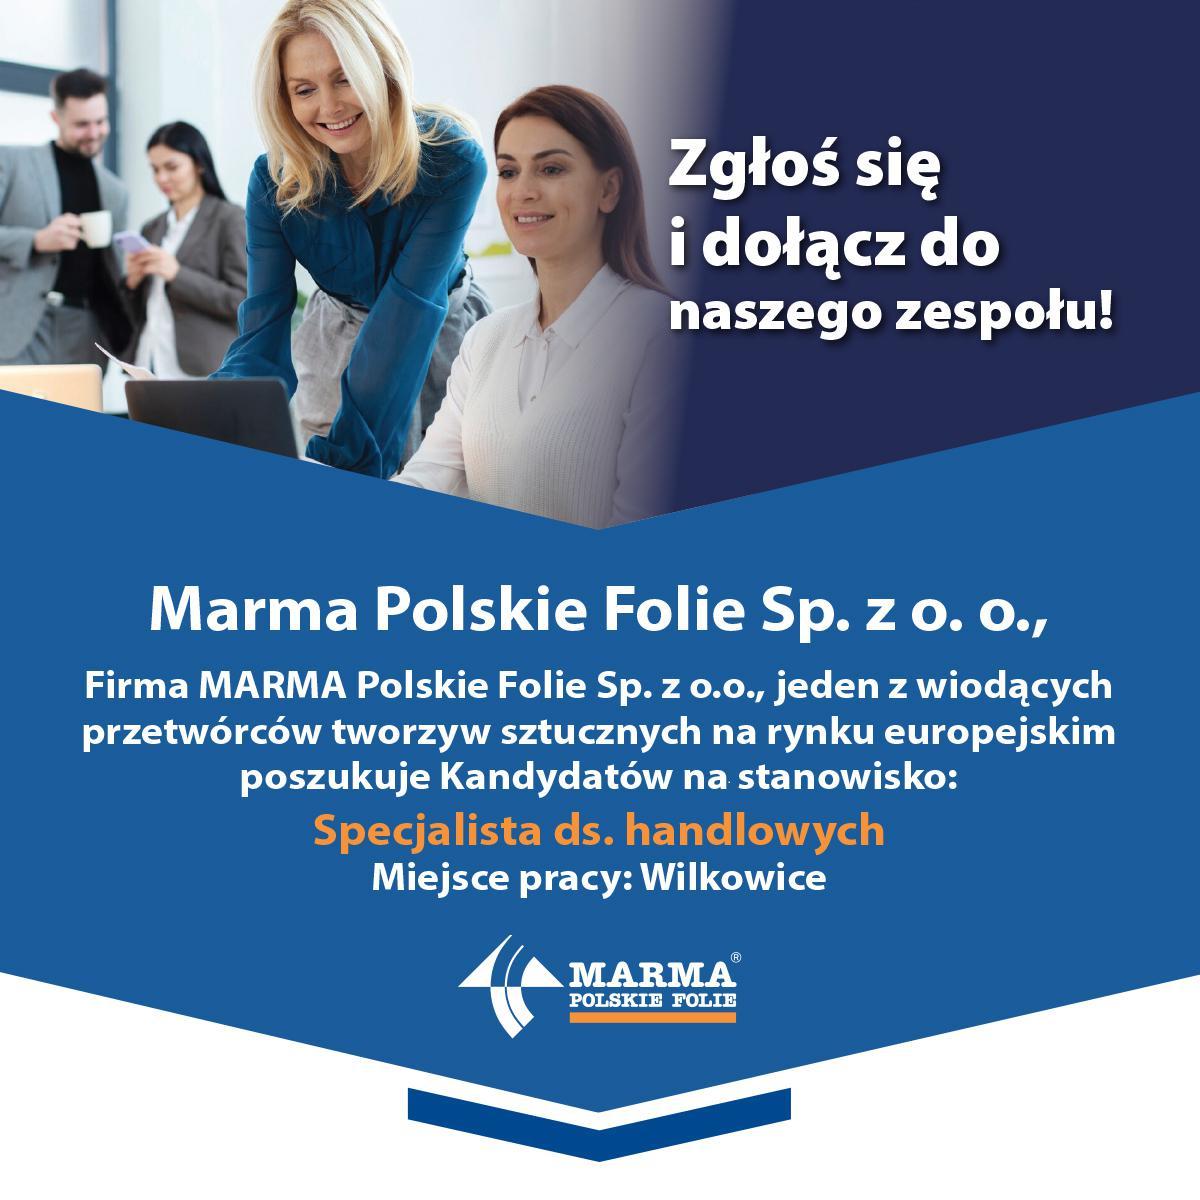 Marma Polskie Folie - oferta pracy